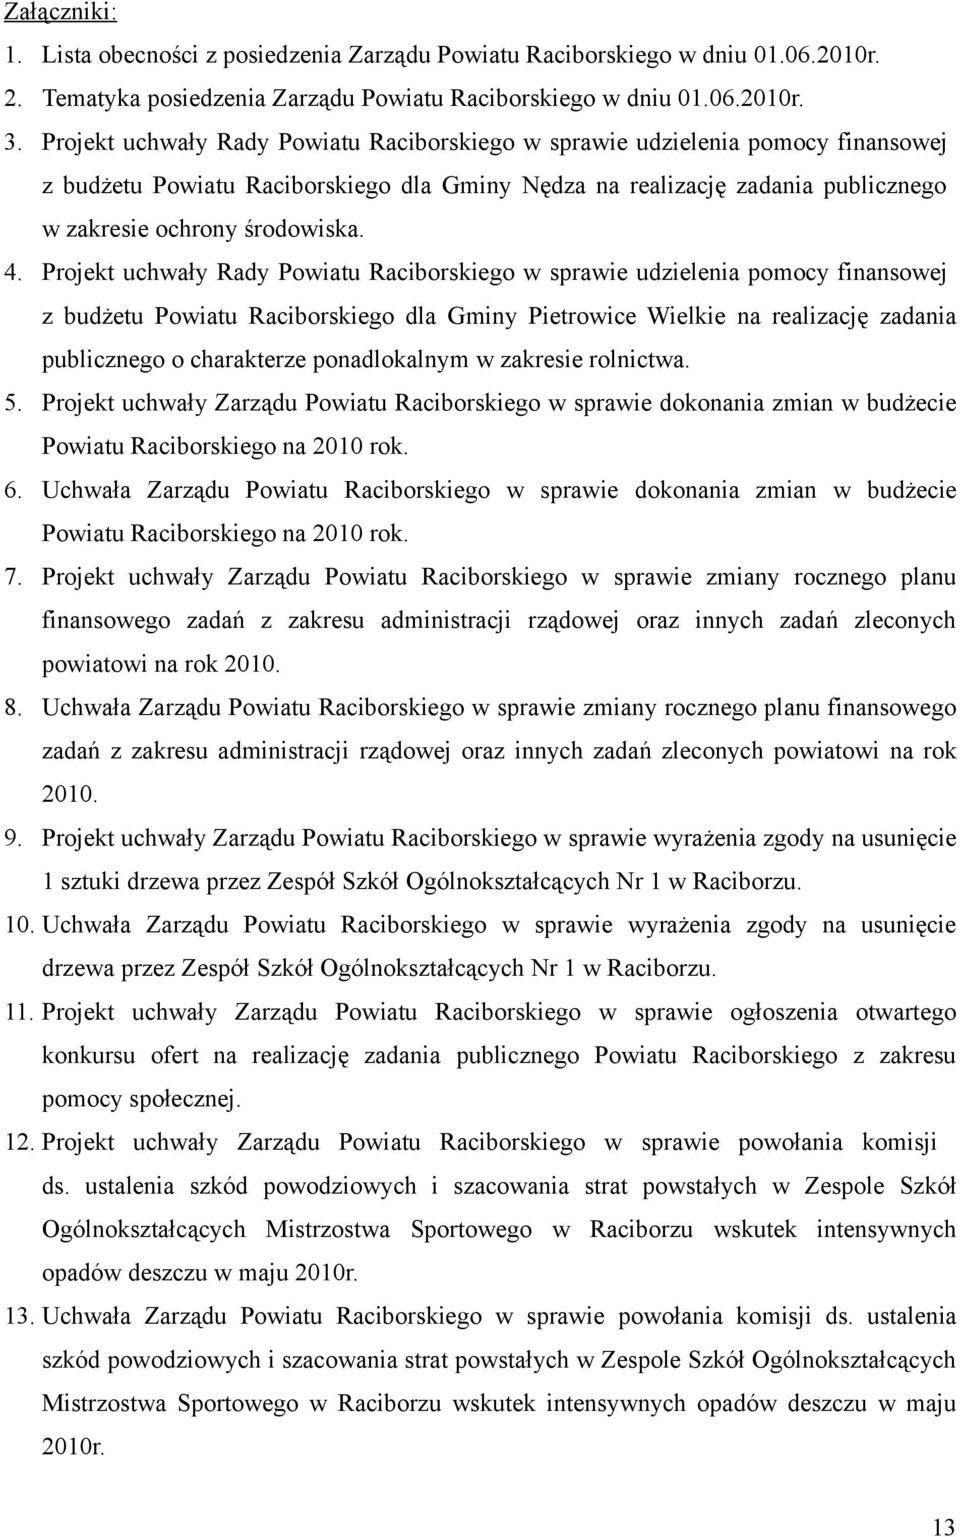 Projekt uchwały Rady Powiatu Raciborskiego w sprawie udzielenia pomocy finansowej z budżetu Powiatu Raciborskiego dla Gminy Pietrowice Wielkie na realizację zadania publicznego o charakterze